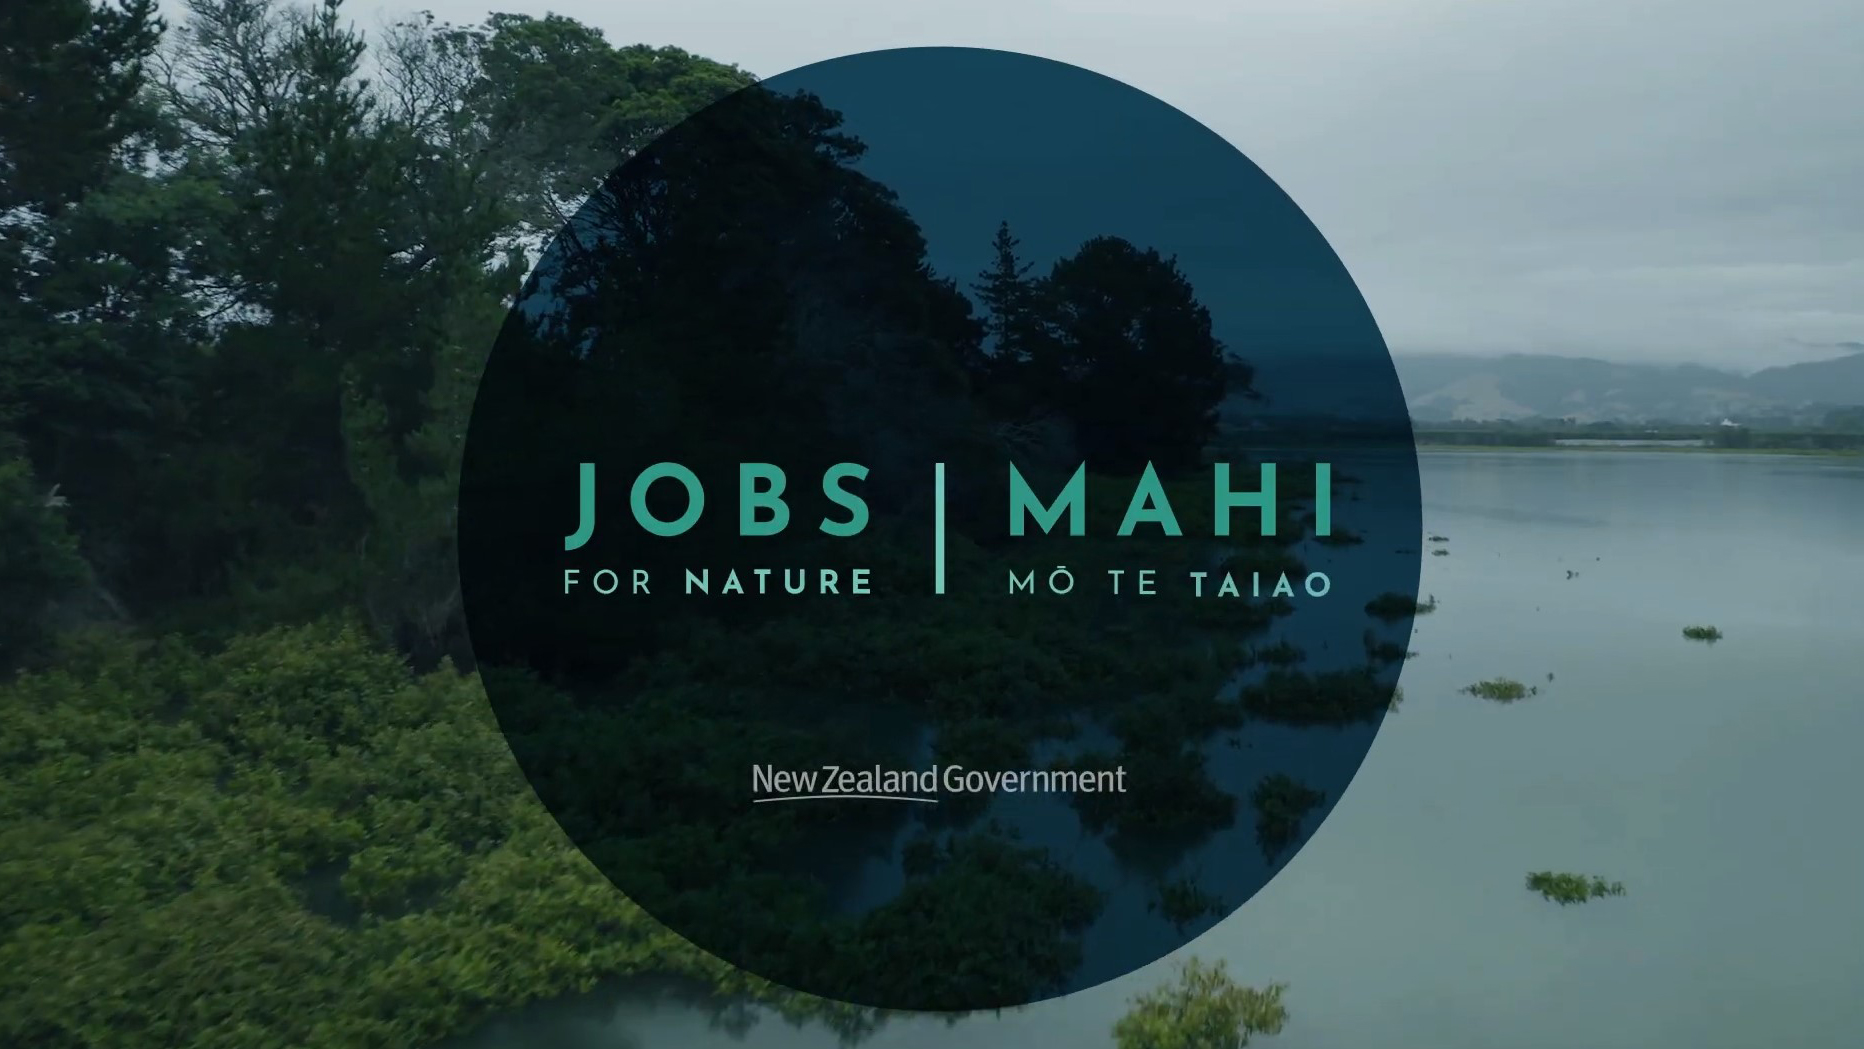 About Mahi mo te Taiao Jobs for Nature thumbail